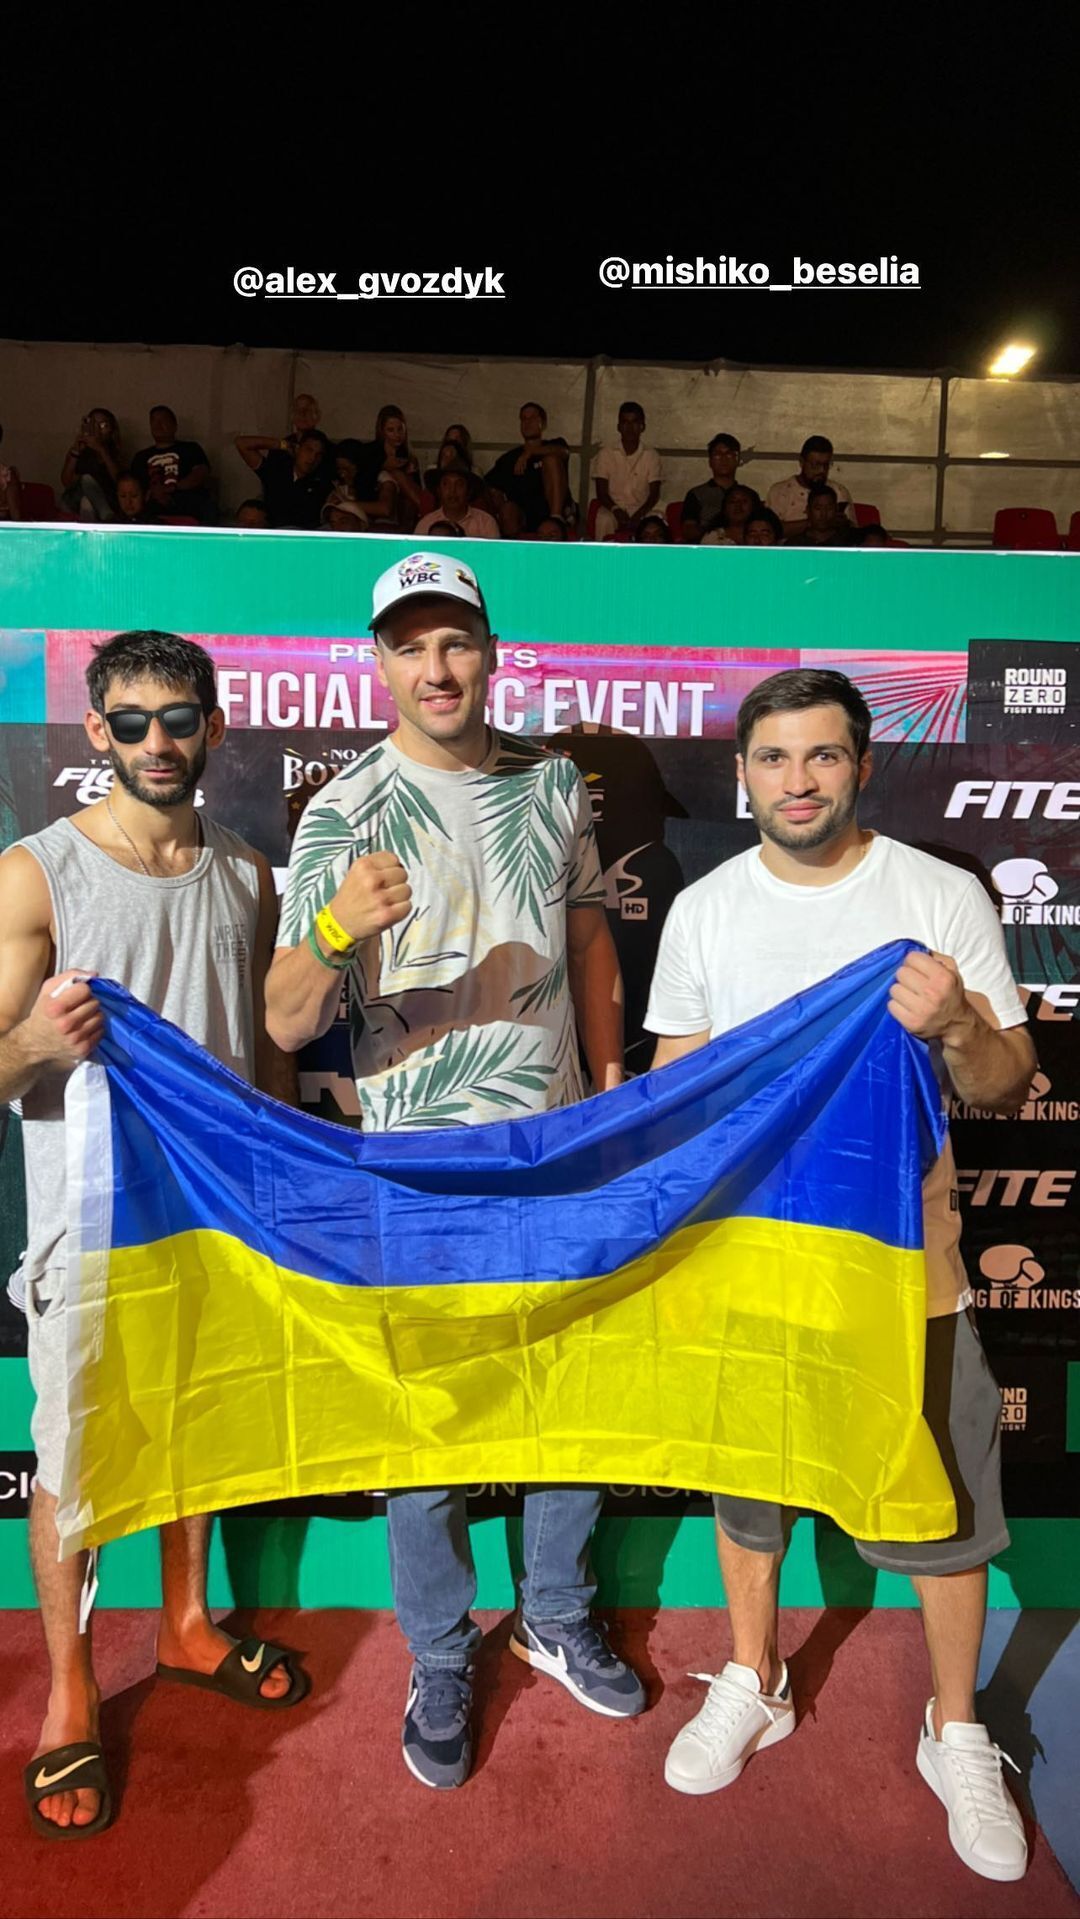 Украинский боксер выиграл нокаутом бой в Мексике. Фото и видео